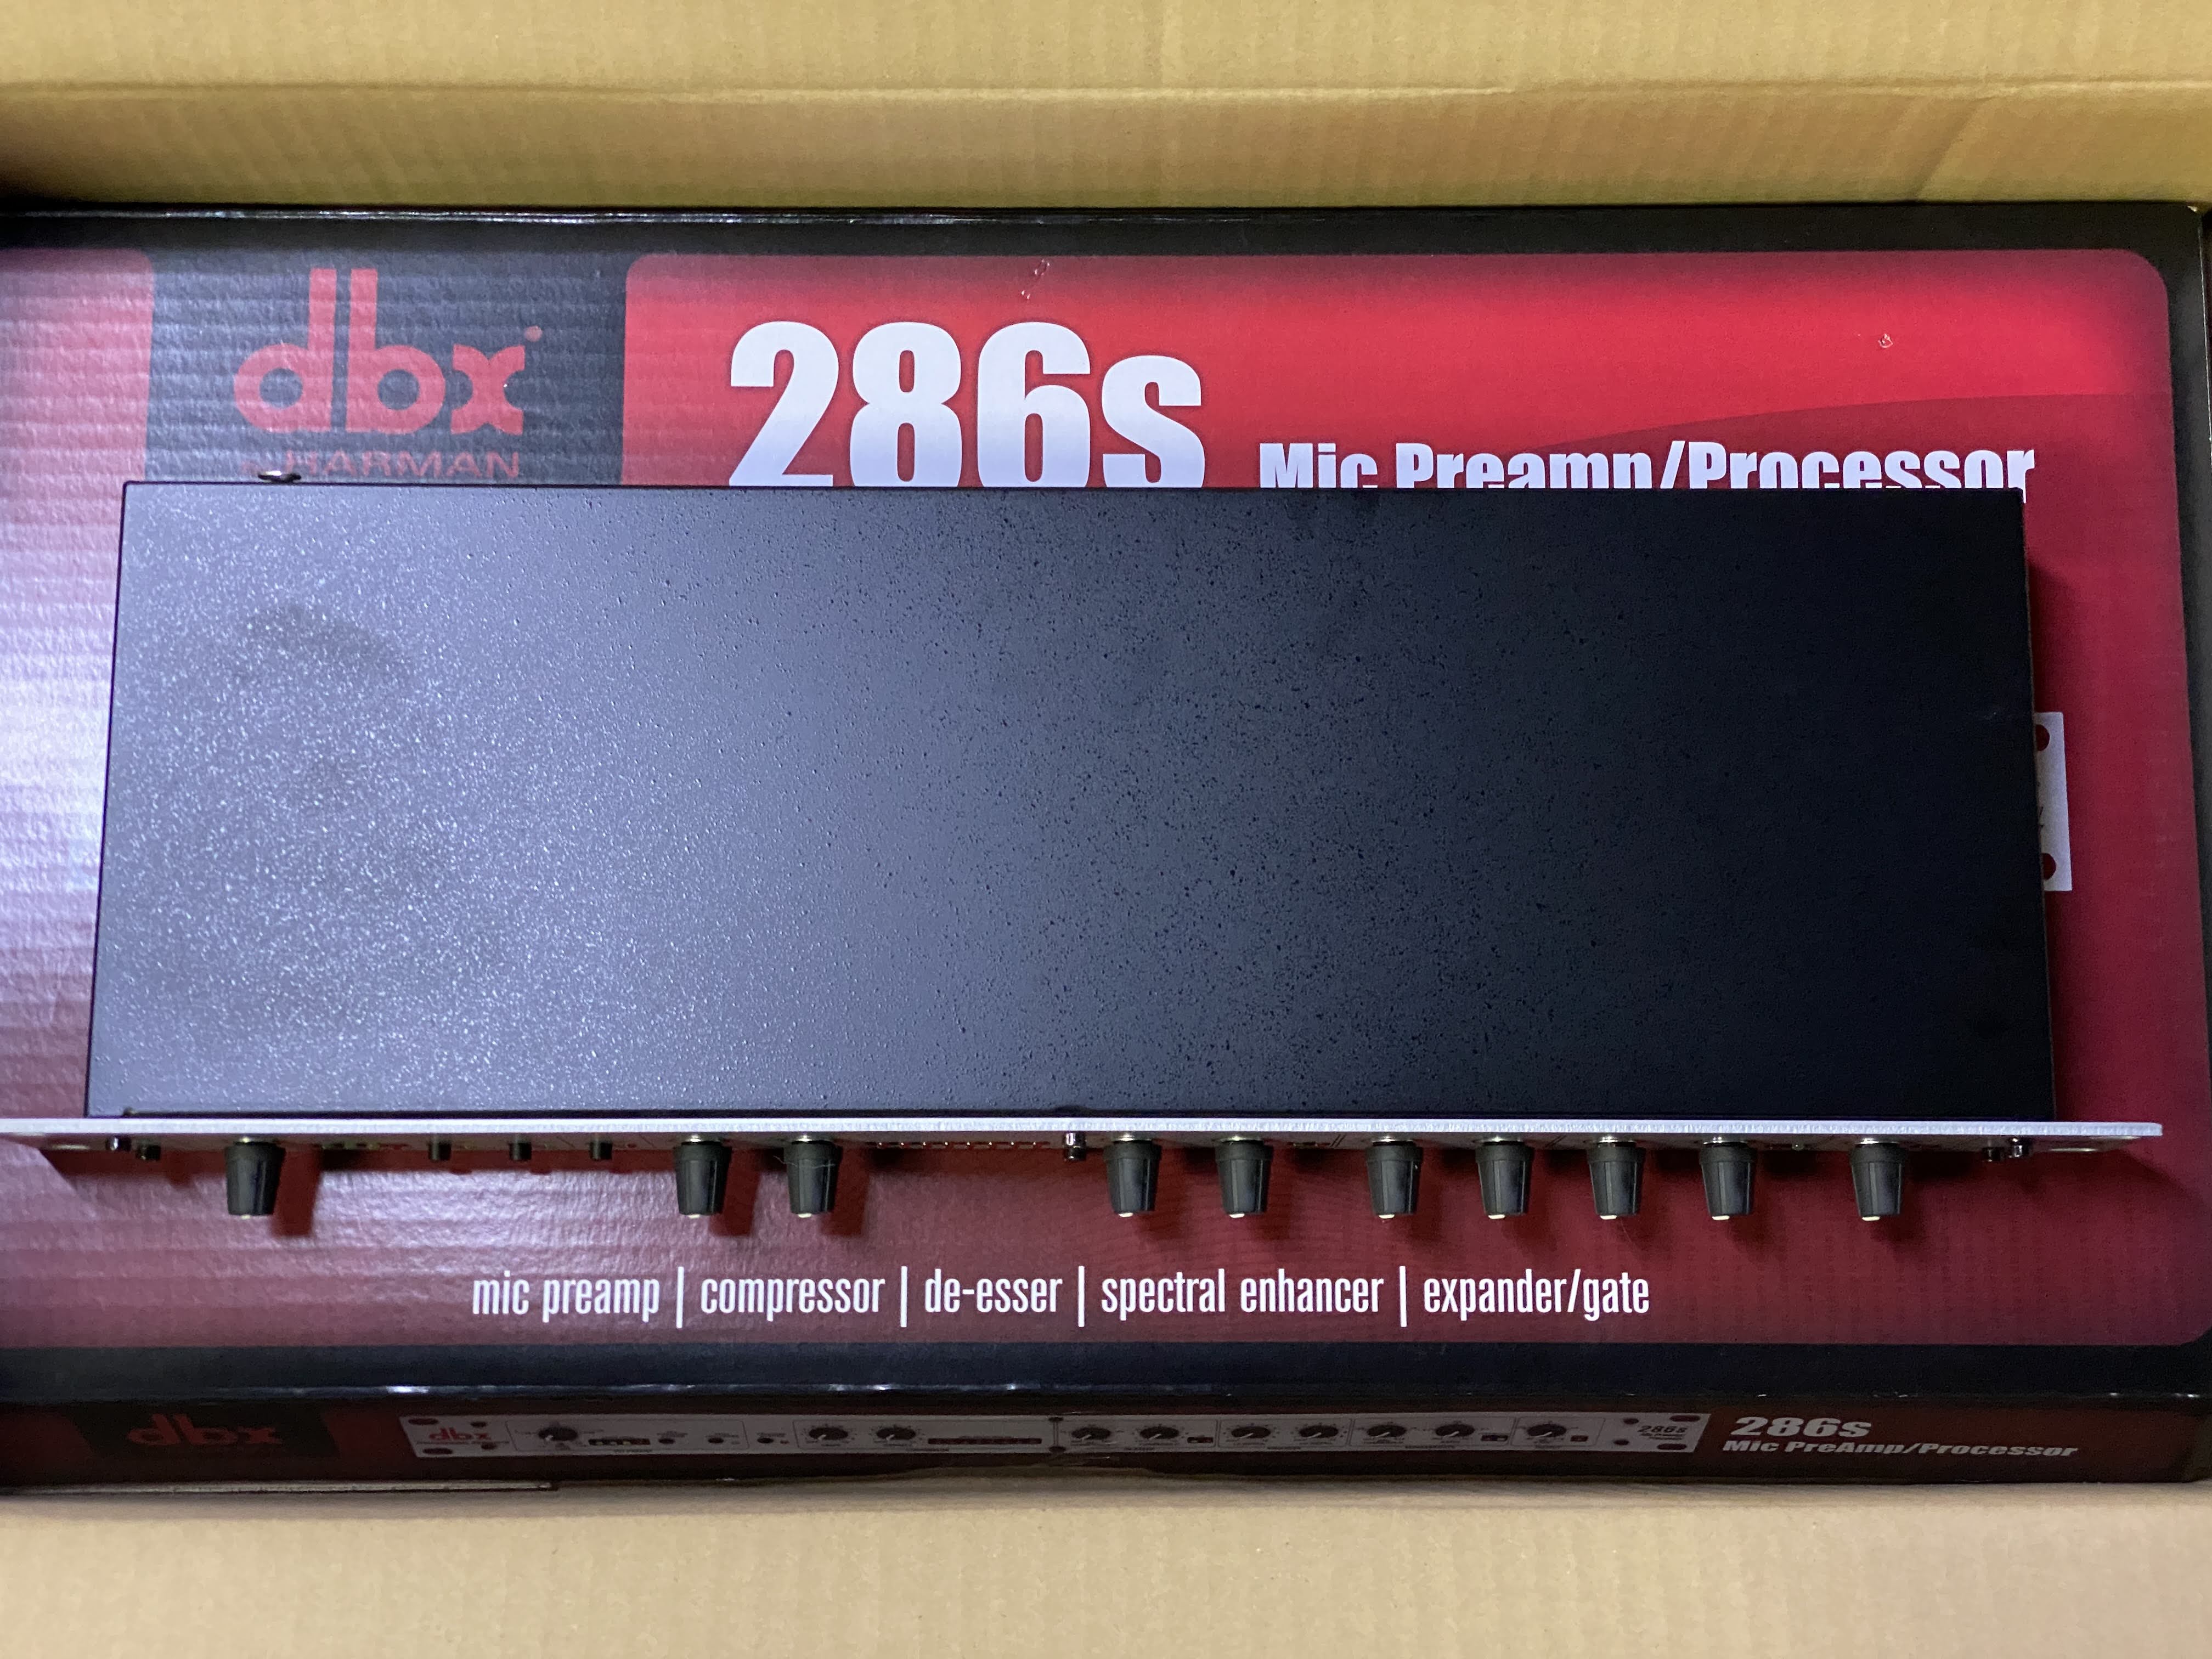 最新最全の Tooru 様 dbx 286s マイクプリ コンプレッサー DTM/DAW 